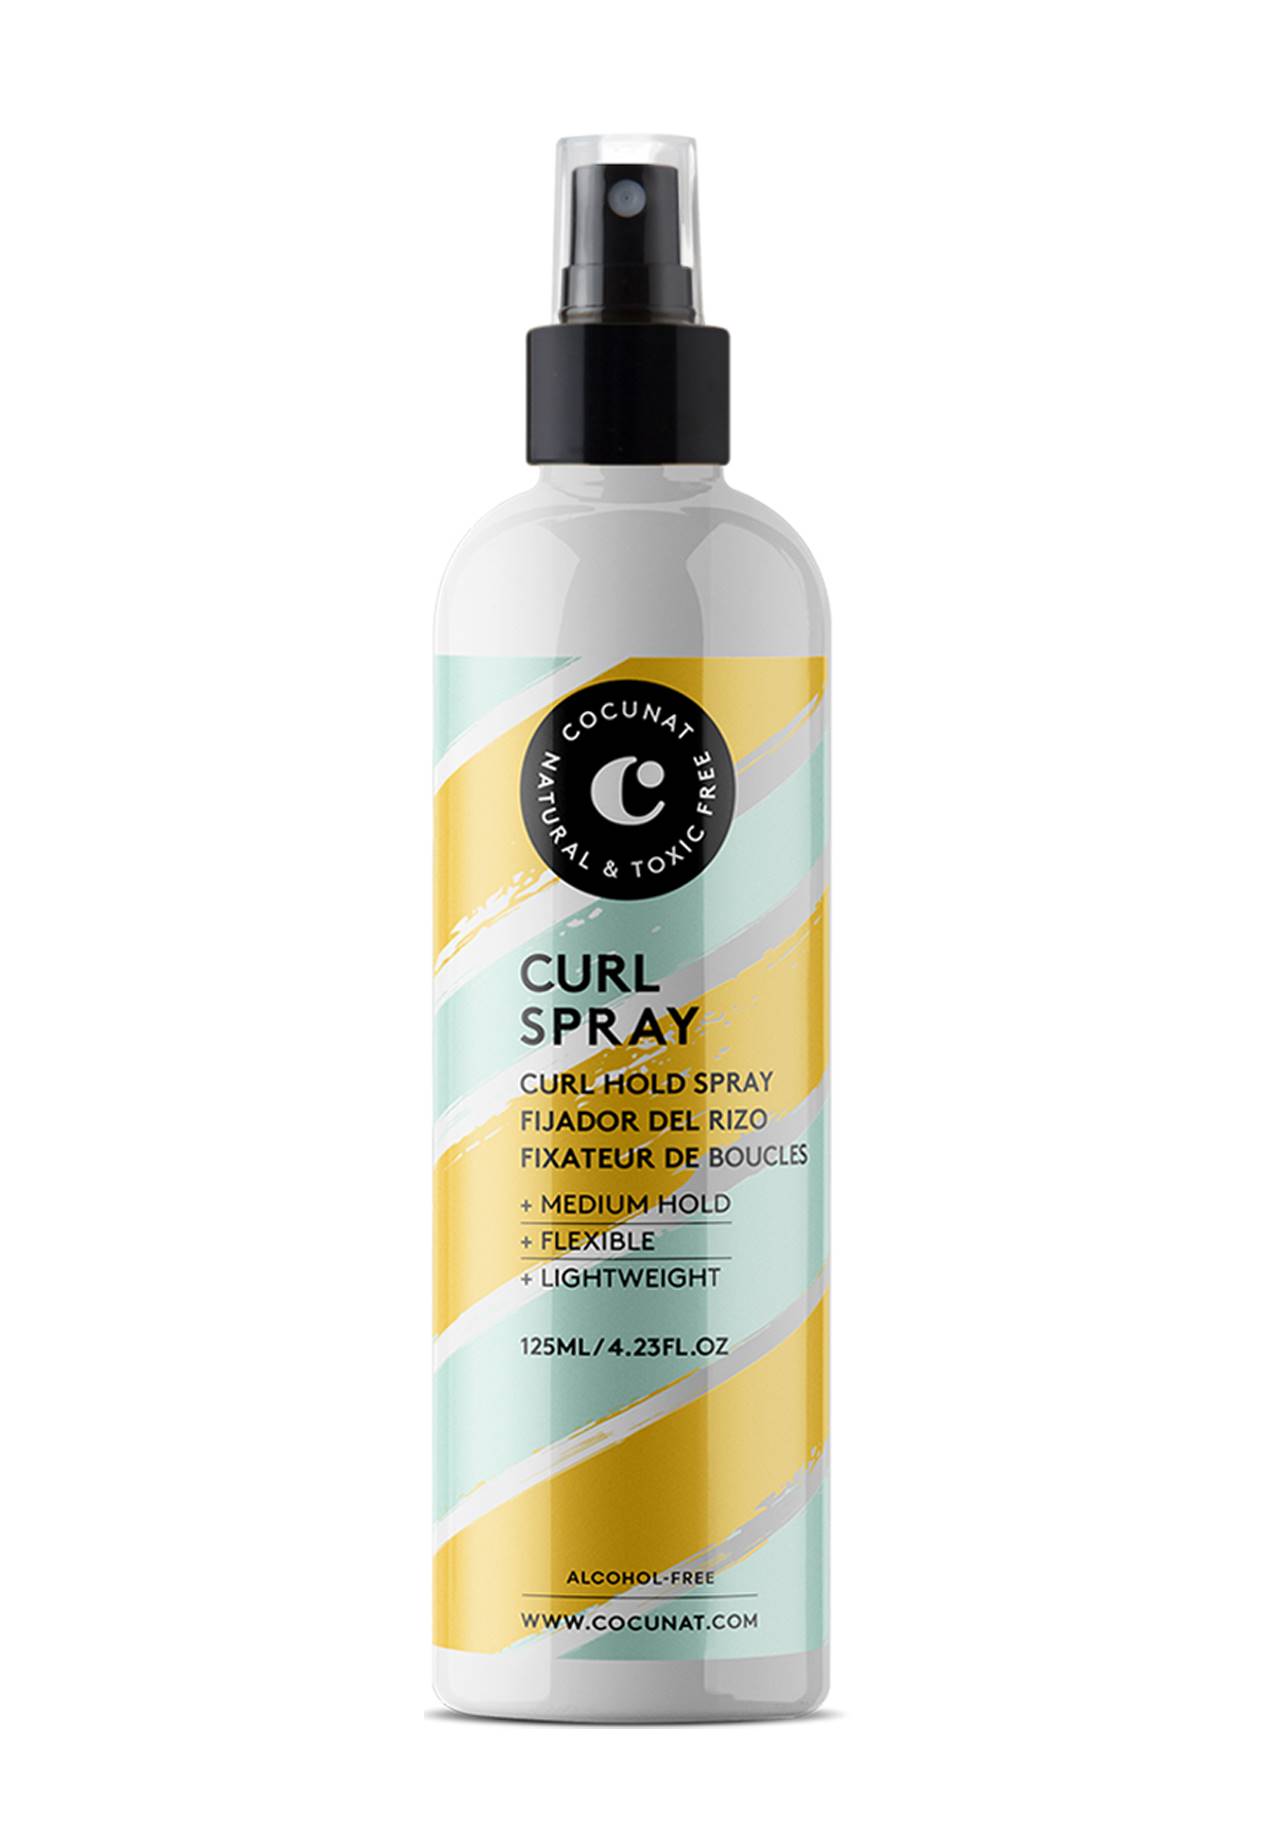 Curl Spray Cocunat